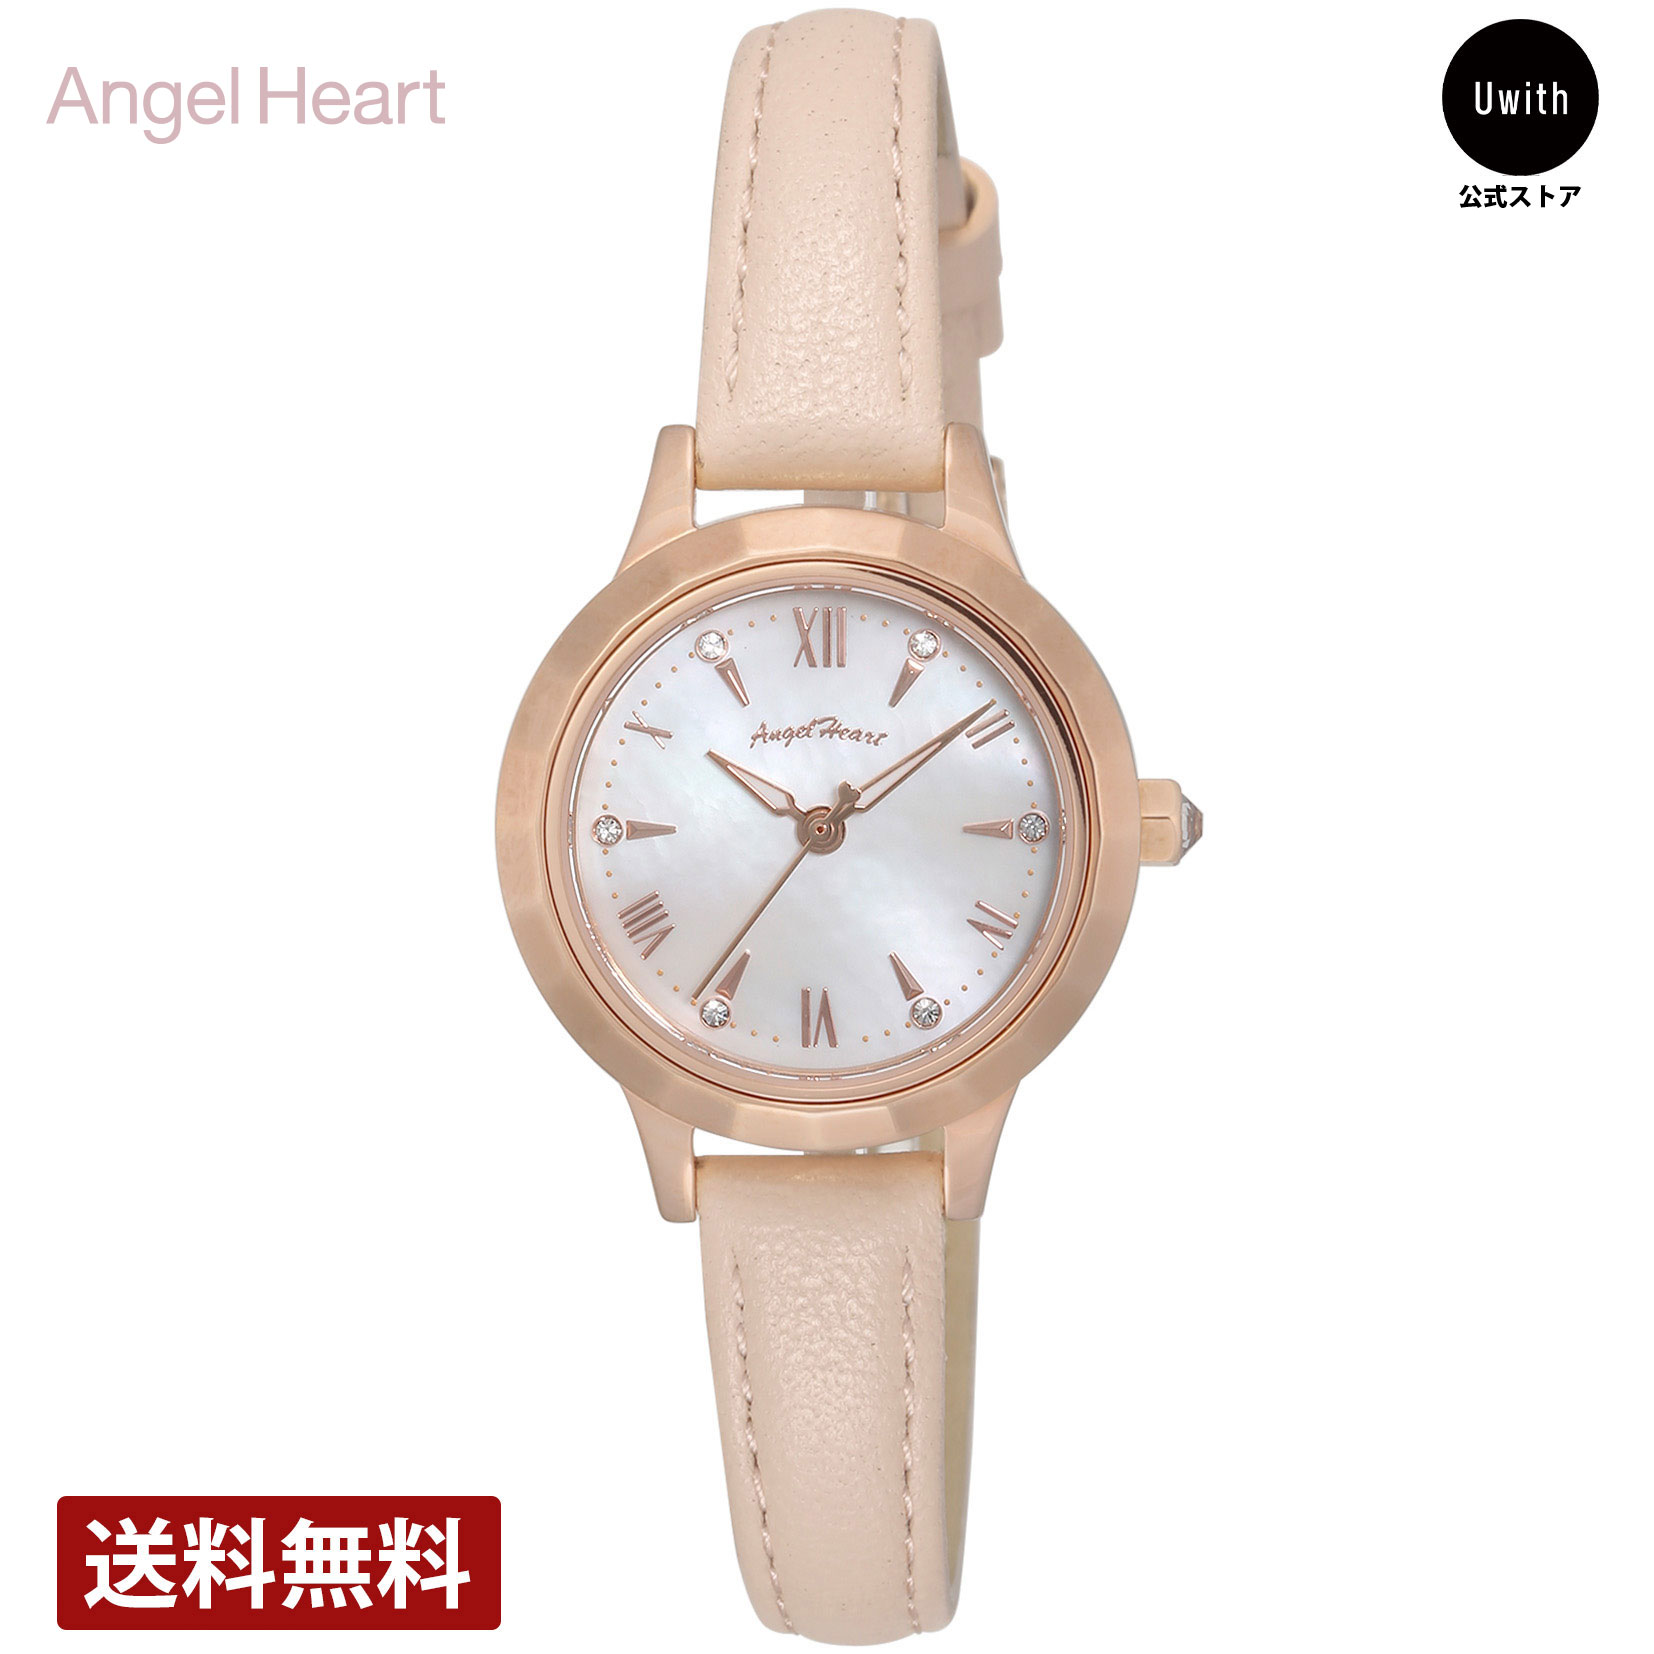 Angel Heart エンジェルハート レディース腕時計 日本製ムーブメントソーラークォーツ ホワイトパール WLS26P-PK 橋本環奈